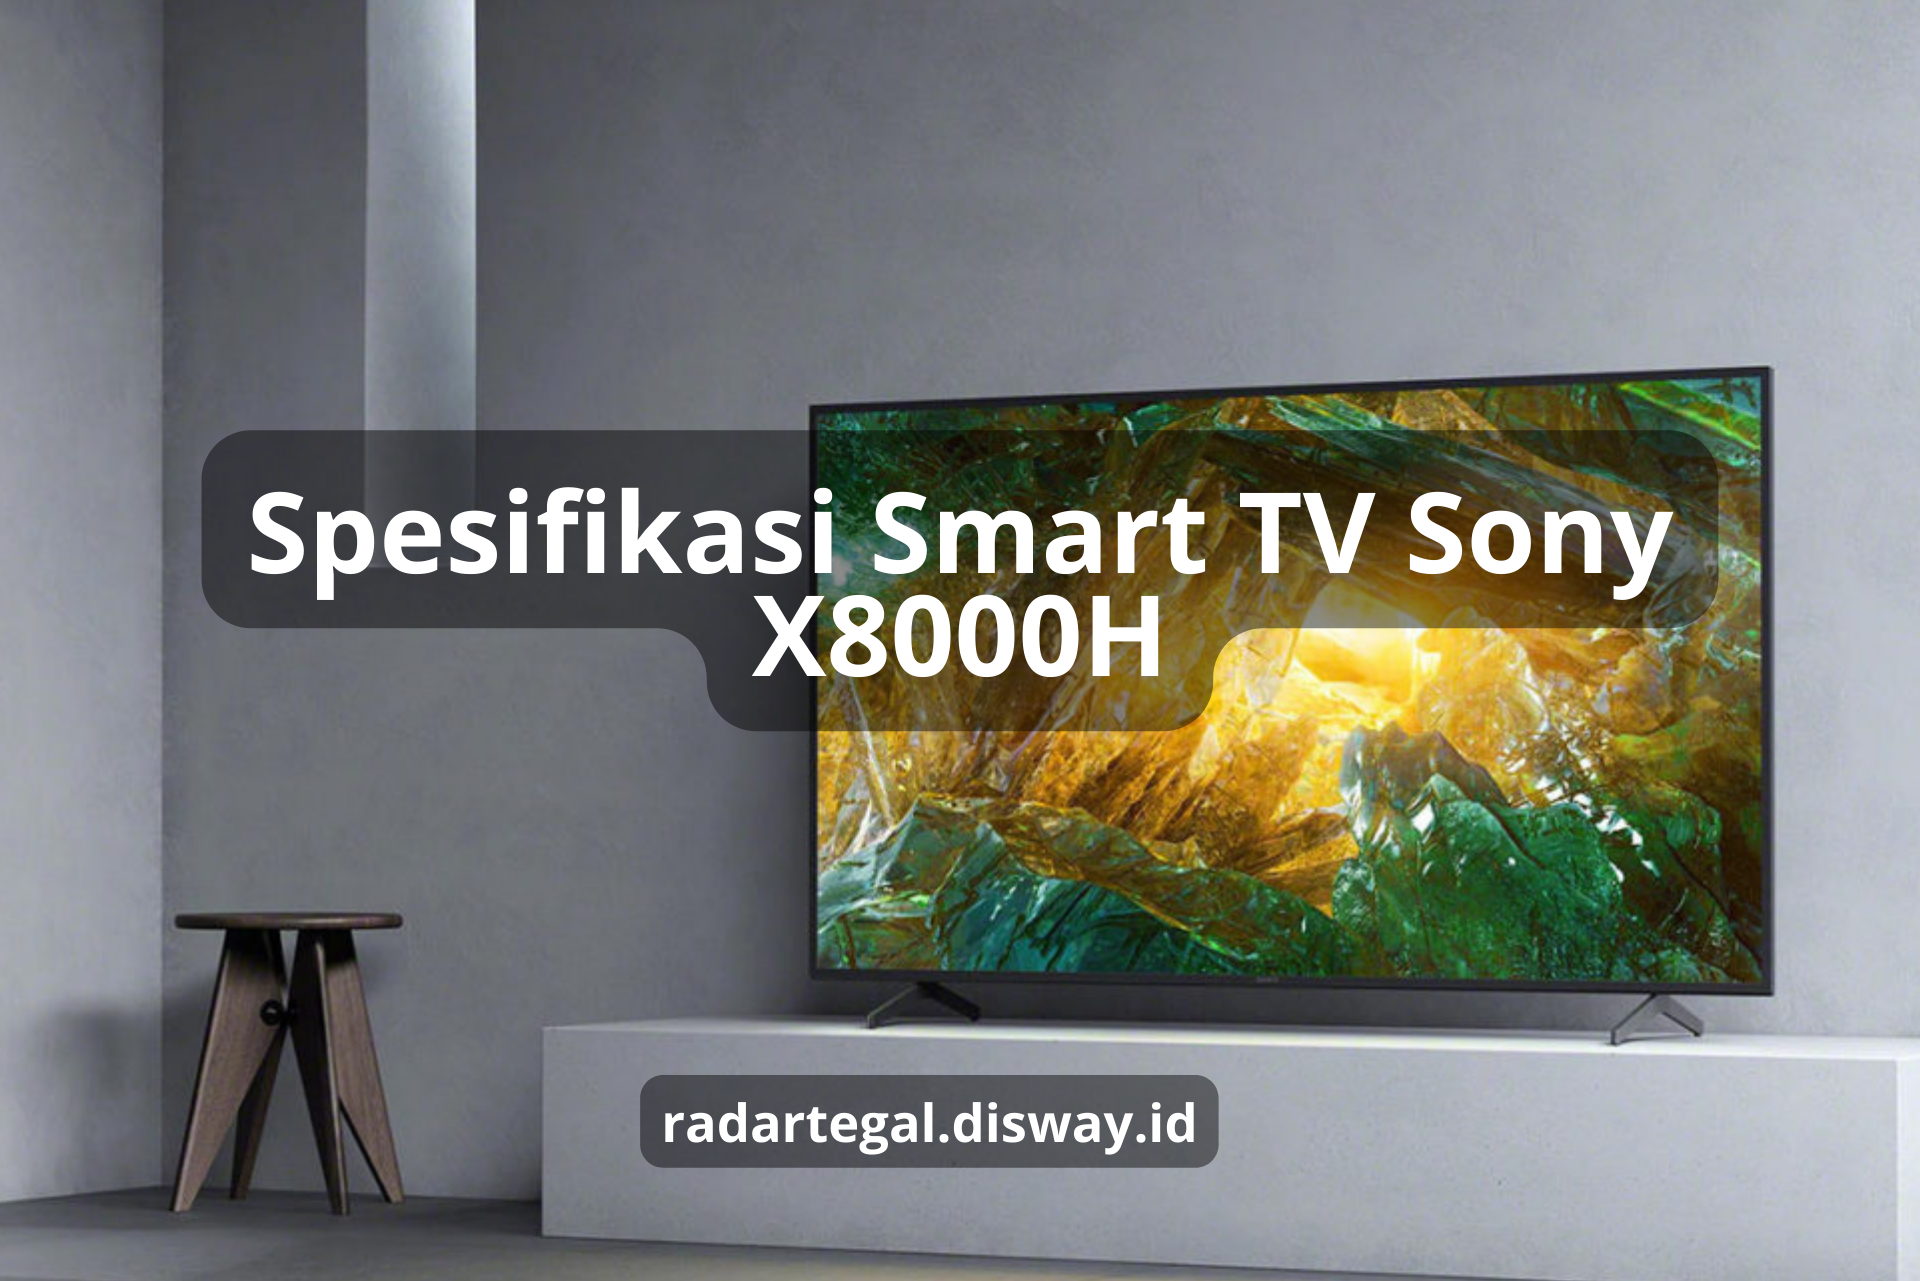 Canggihnya Smart TV Sony X8000H, TV Pintar dengan Performa Gambar yang Berkualitas Tinggi